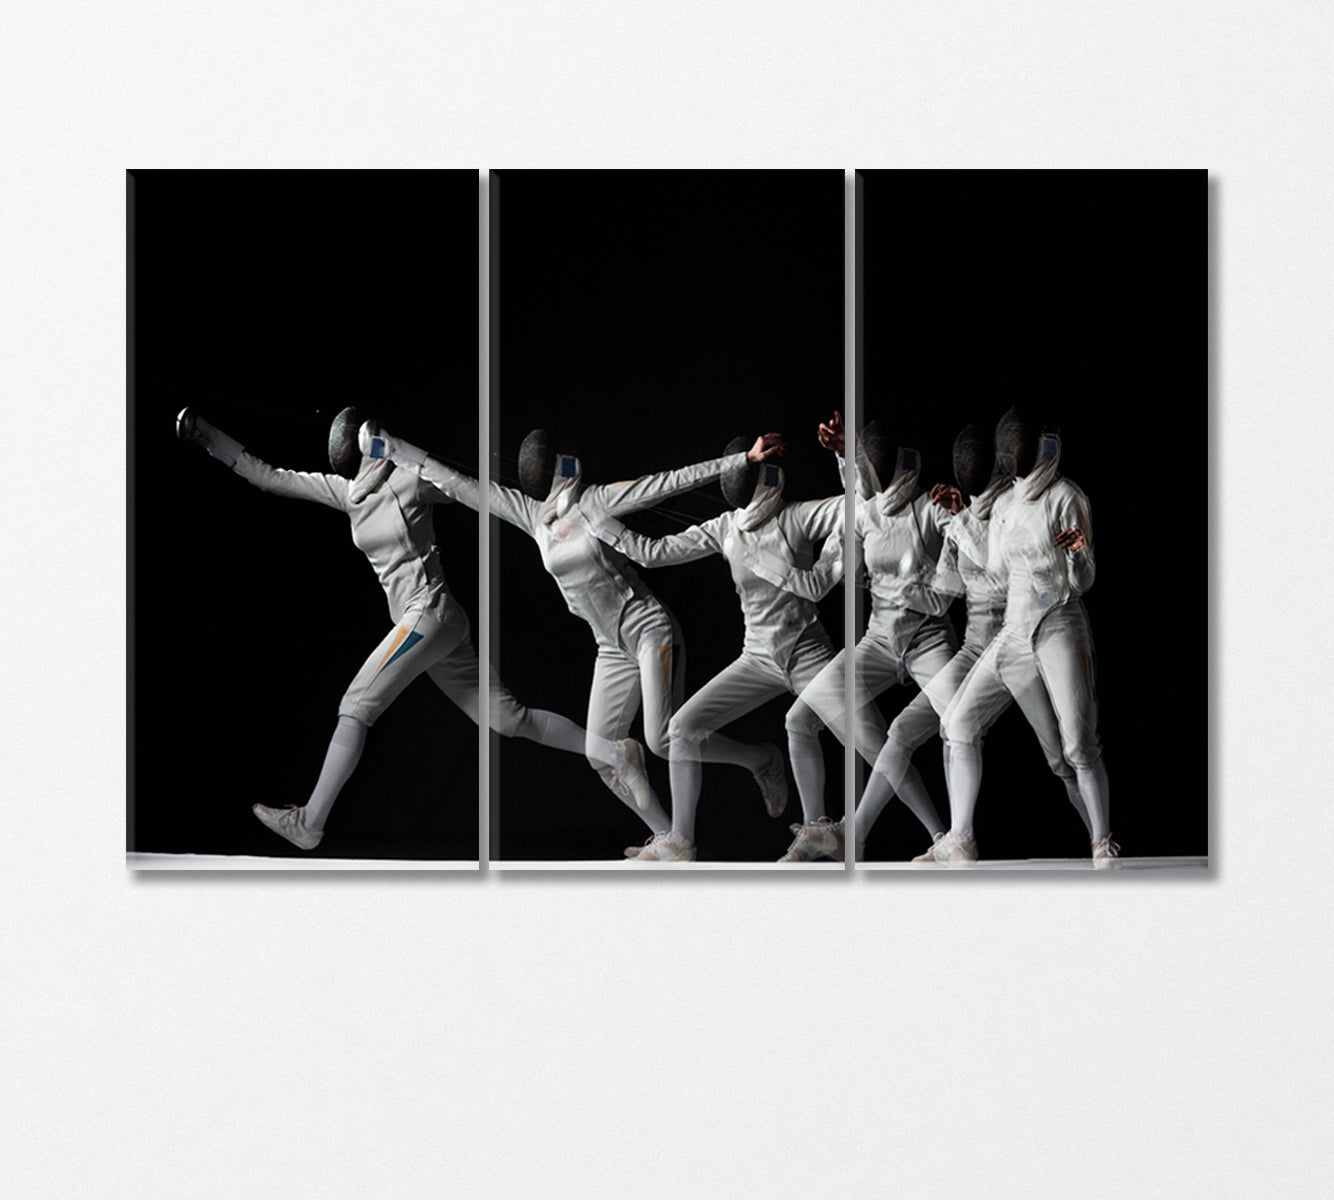 Fencing Process Canvas Print-Canvas Print-CetArt-3 Panels-36x24 inches-CetArt